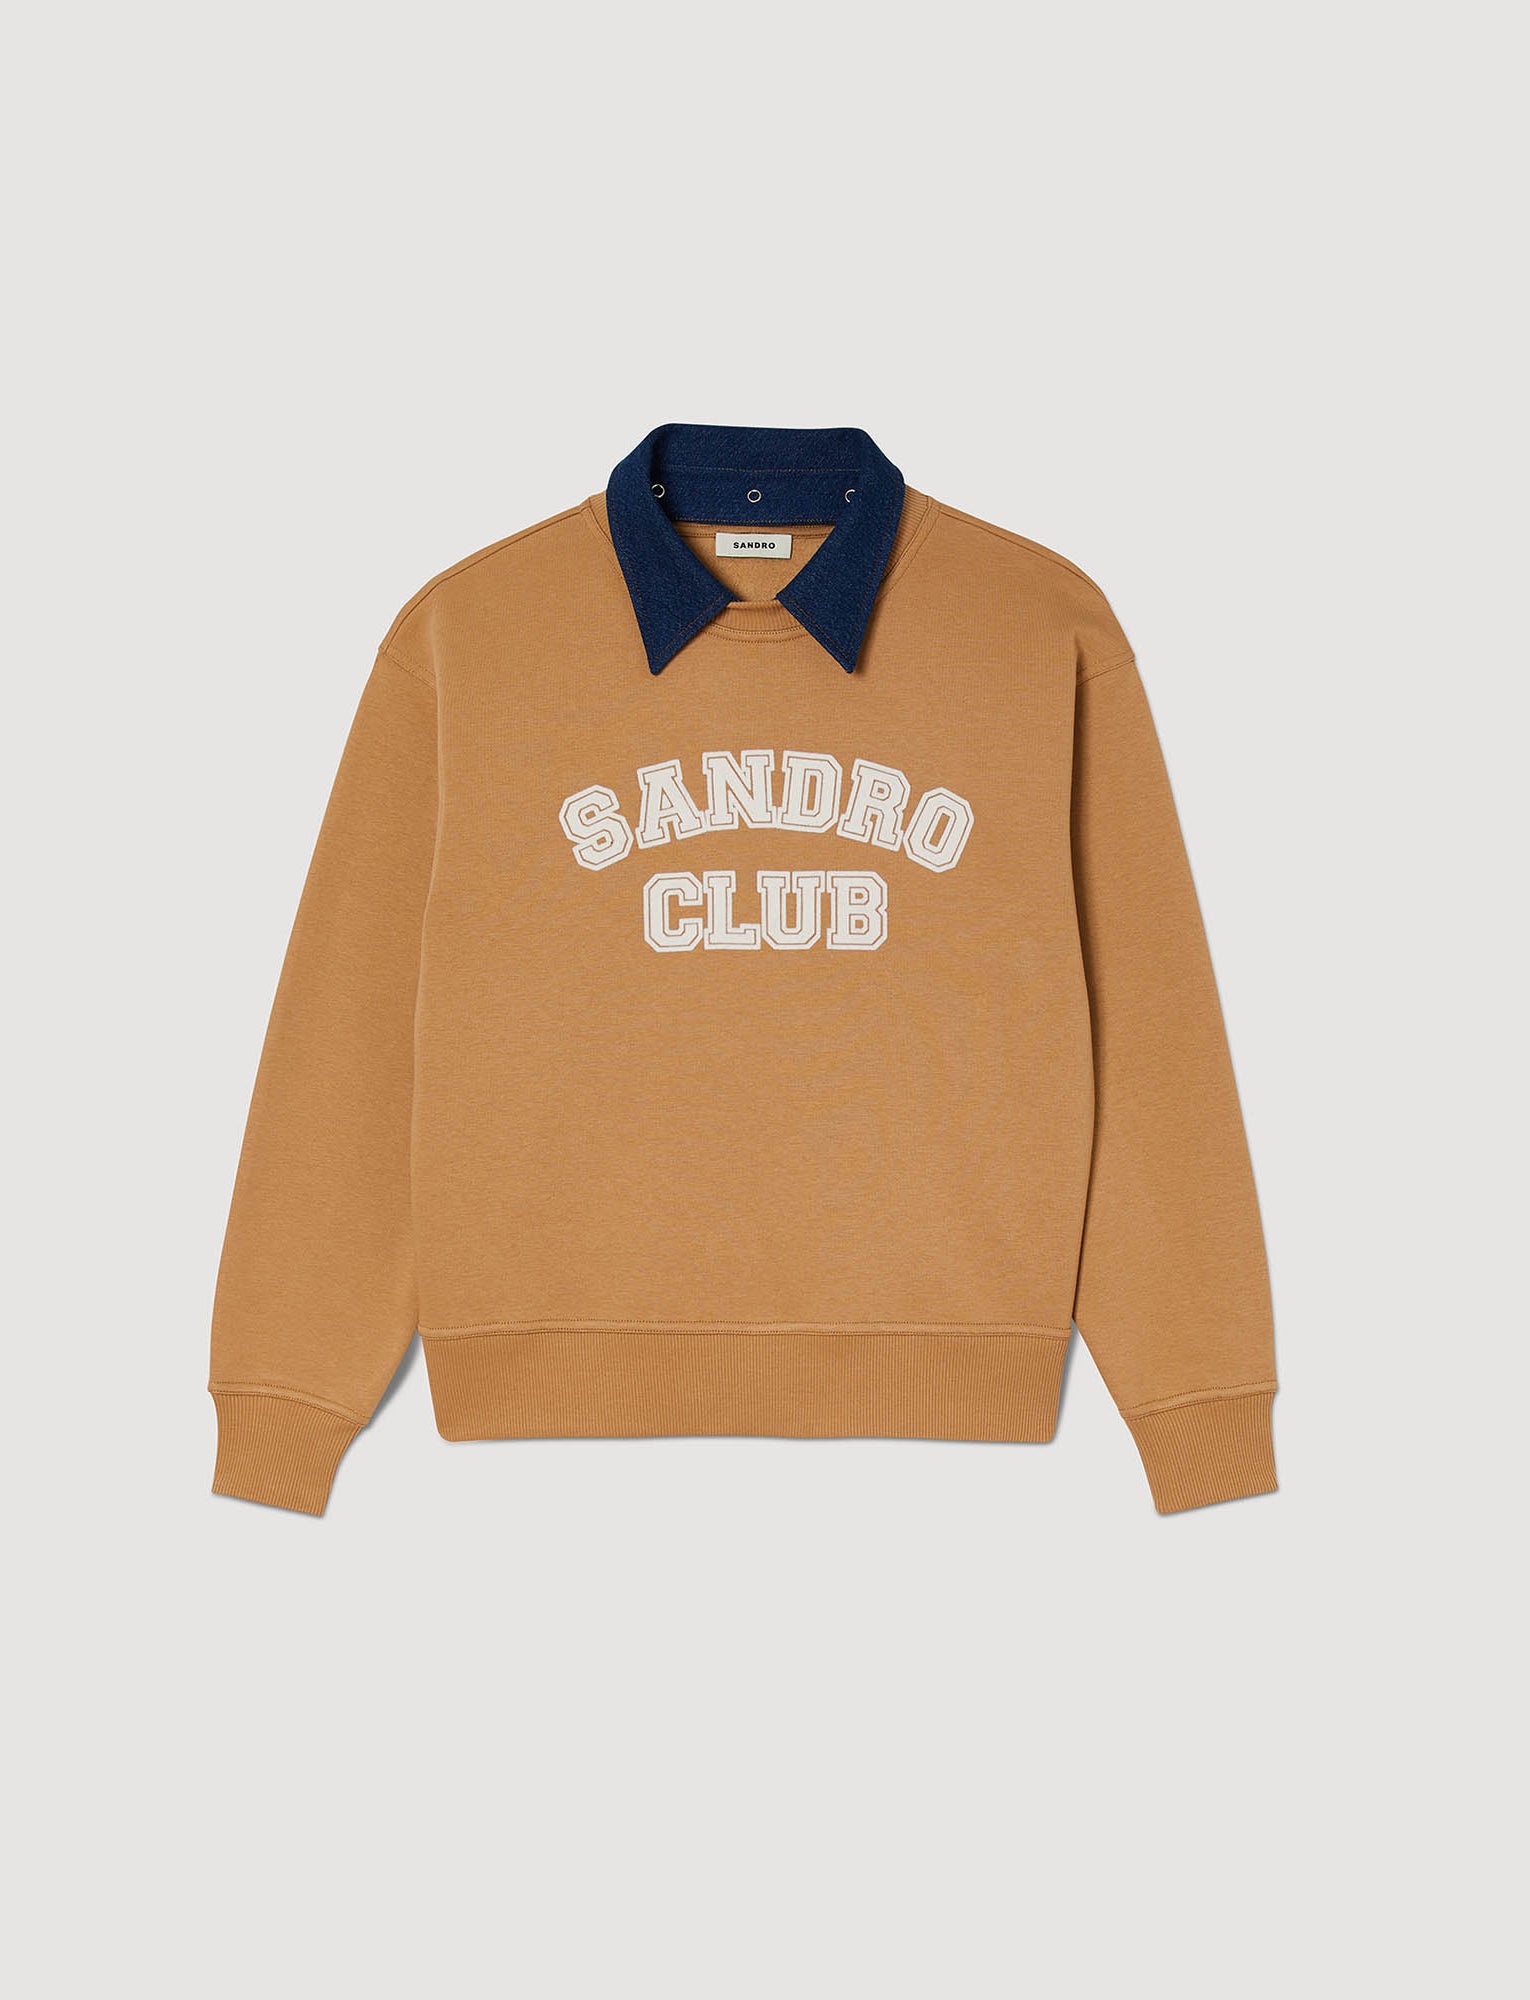 Sudadera Sandro Club